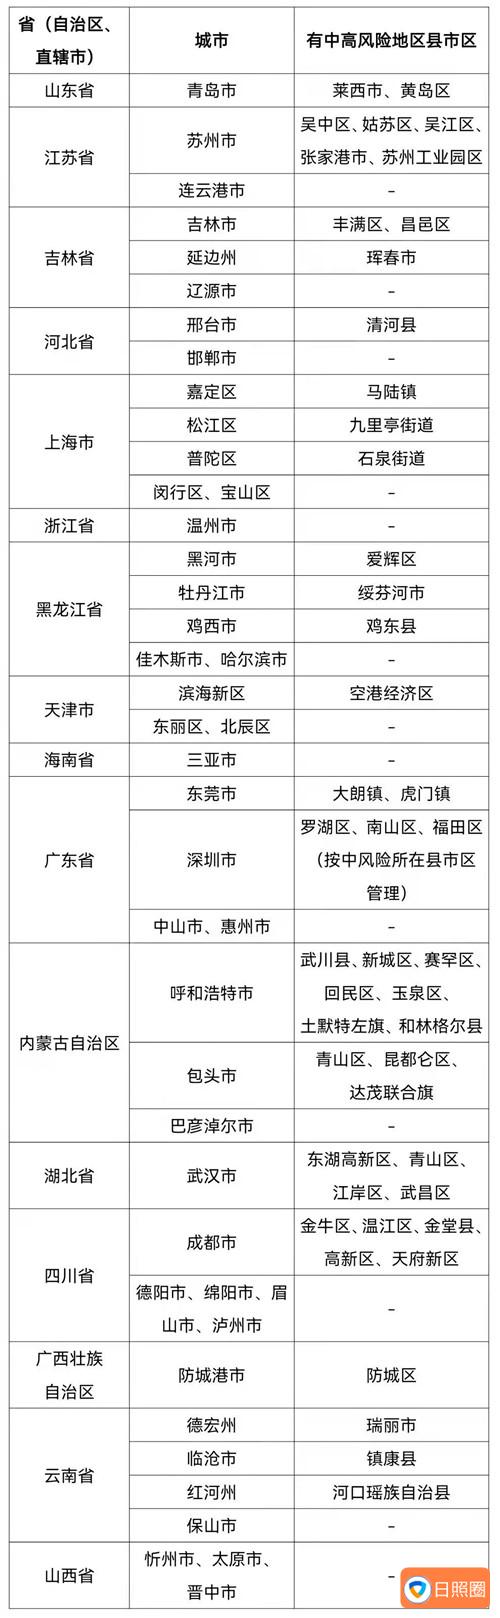 3月6日19时至24时，青岛莱西市新增4例新冠肺炎确诊病例、45例无症状感染者配图